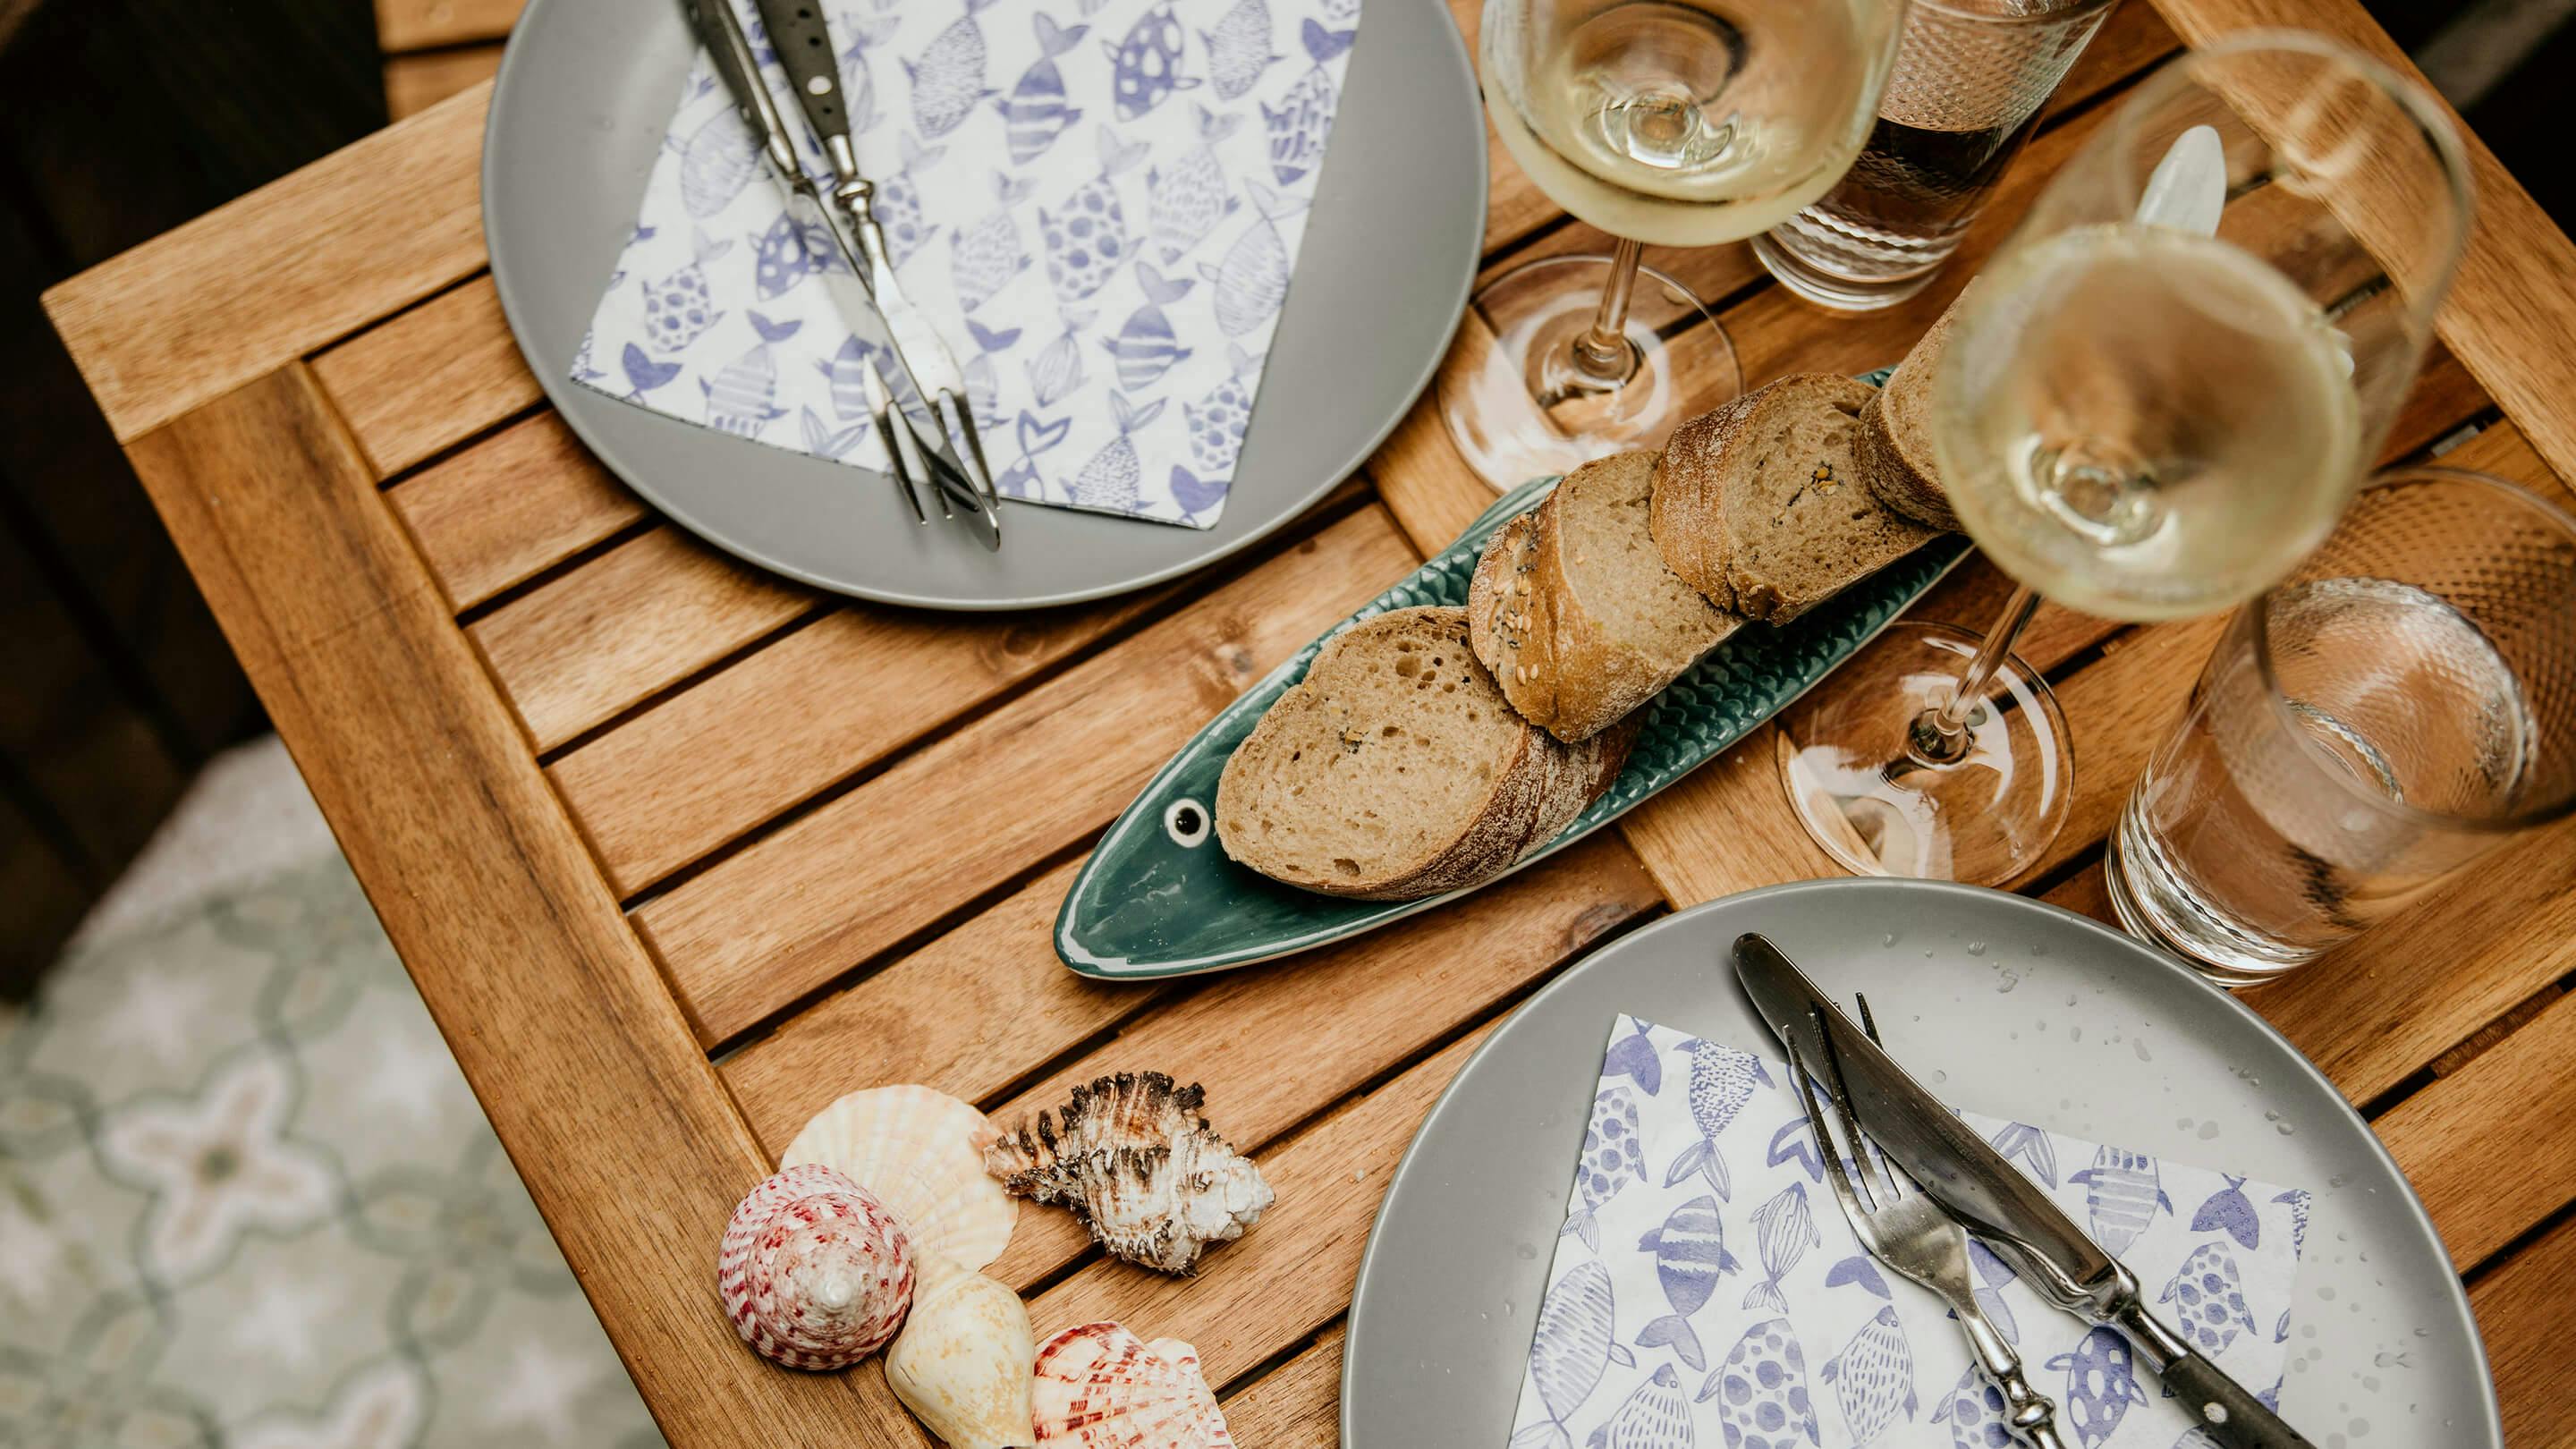 Gedeckter Gartentisch von oben gesehen: Teller mit Besteck und Serviette, Baguette in Scheiben, Weingläser (Marke: Butlers).